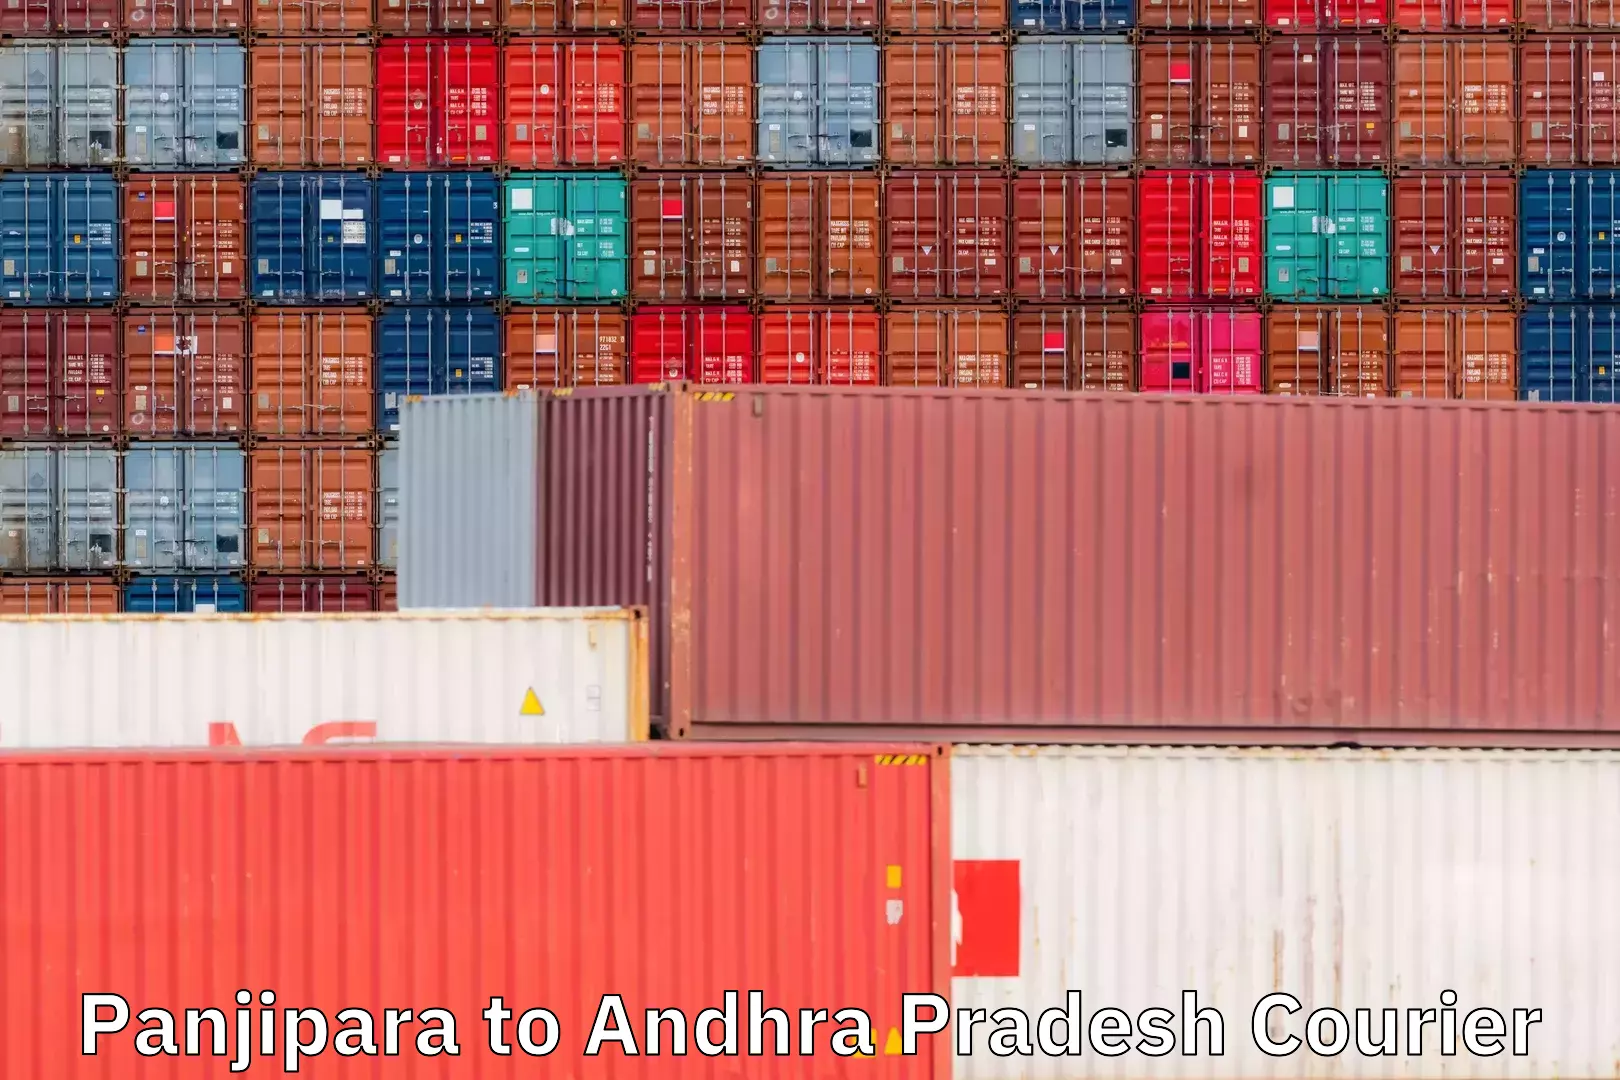 Tracking updates Panjipara to Andhra Pradesh